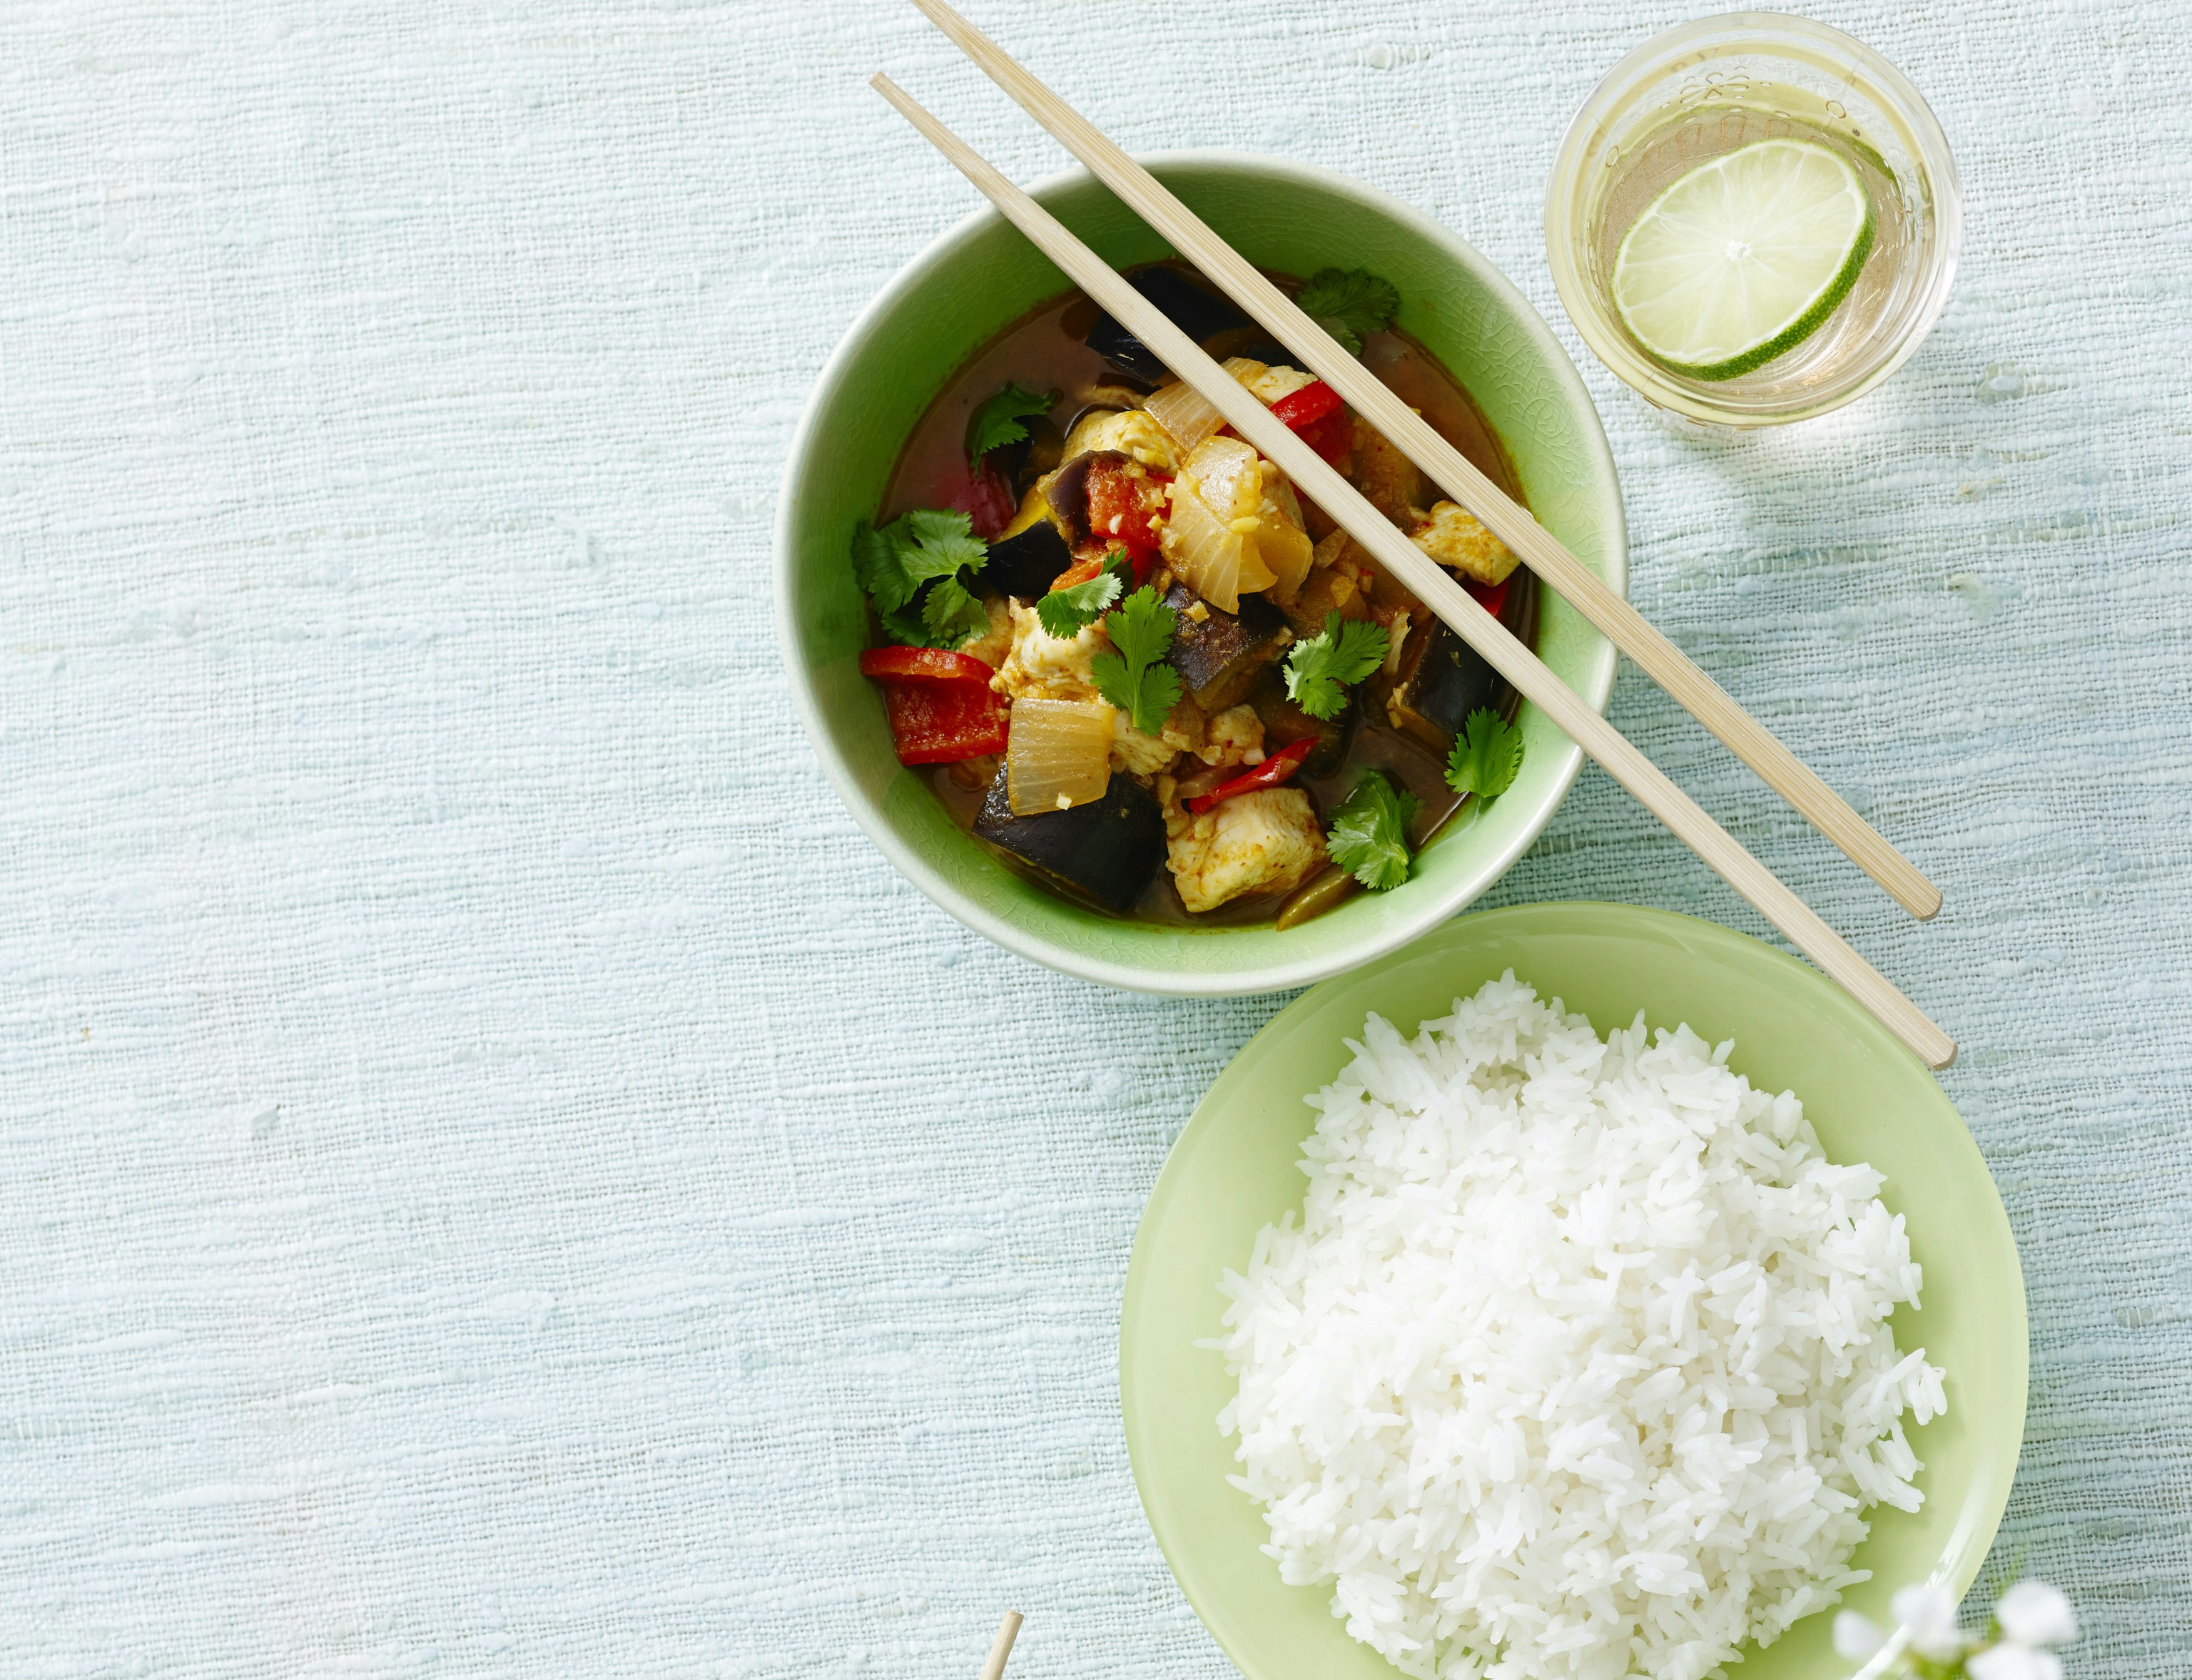 Thaicurry med kylling og grøntsager